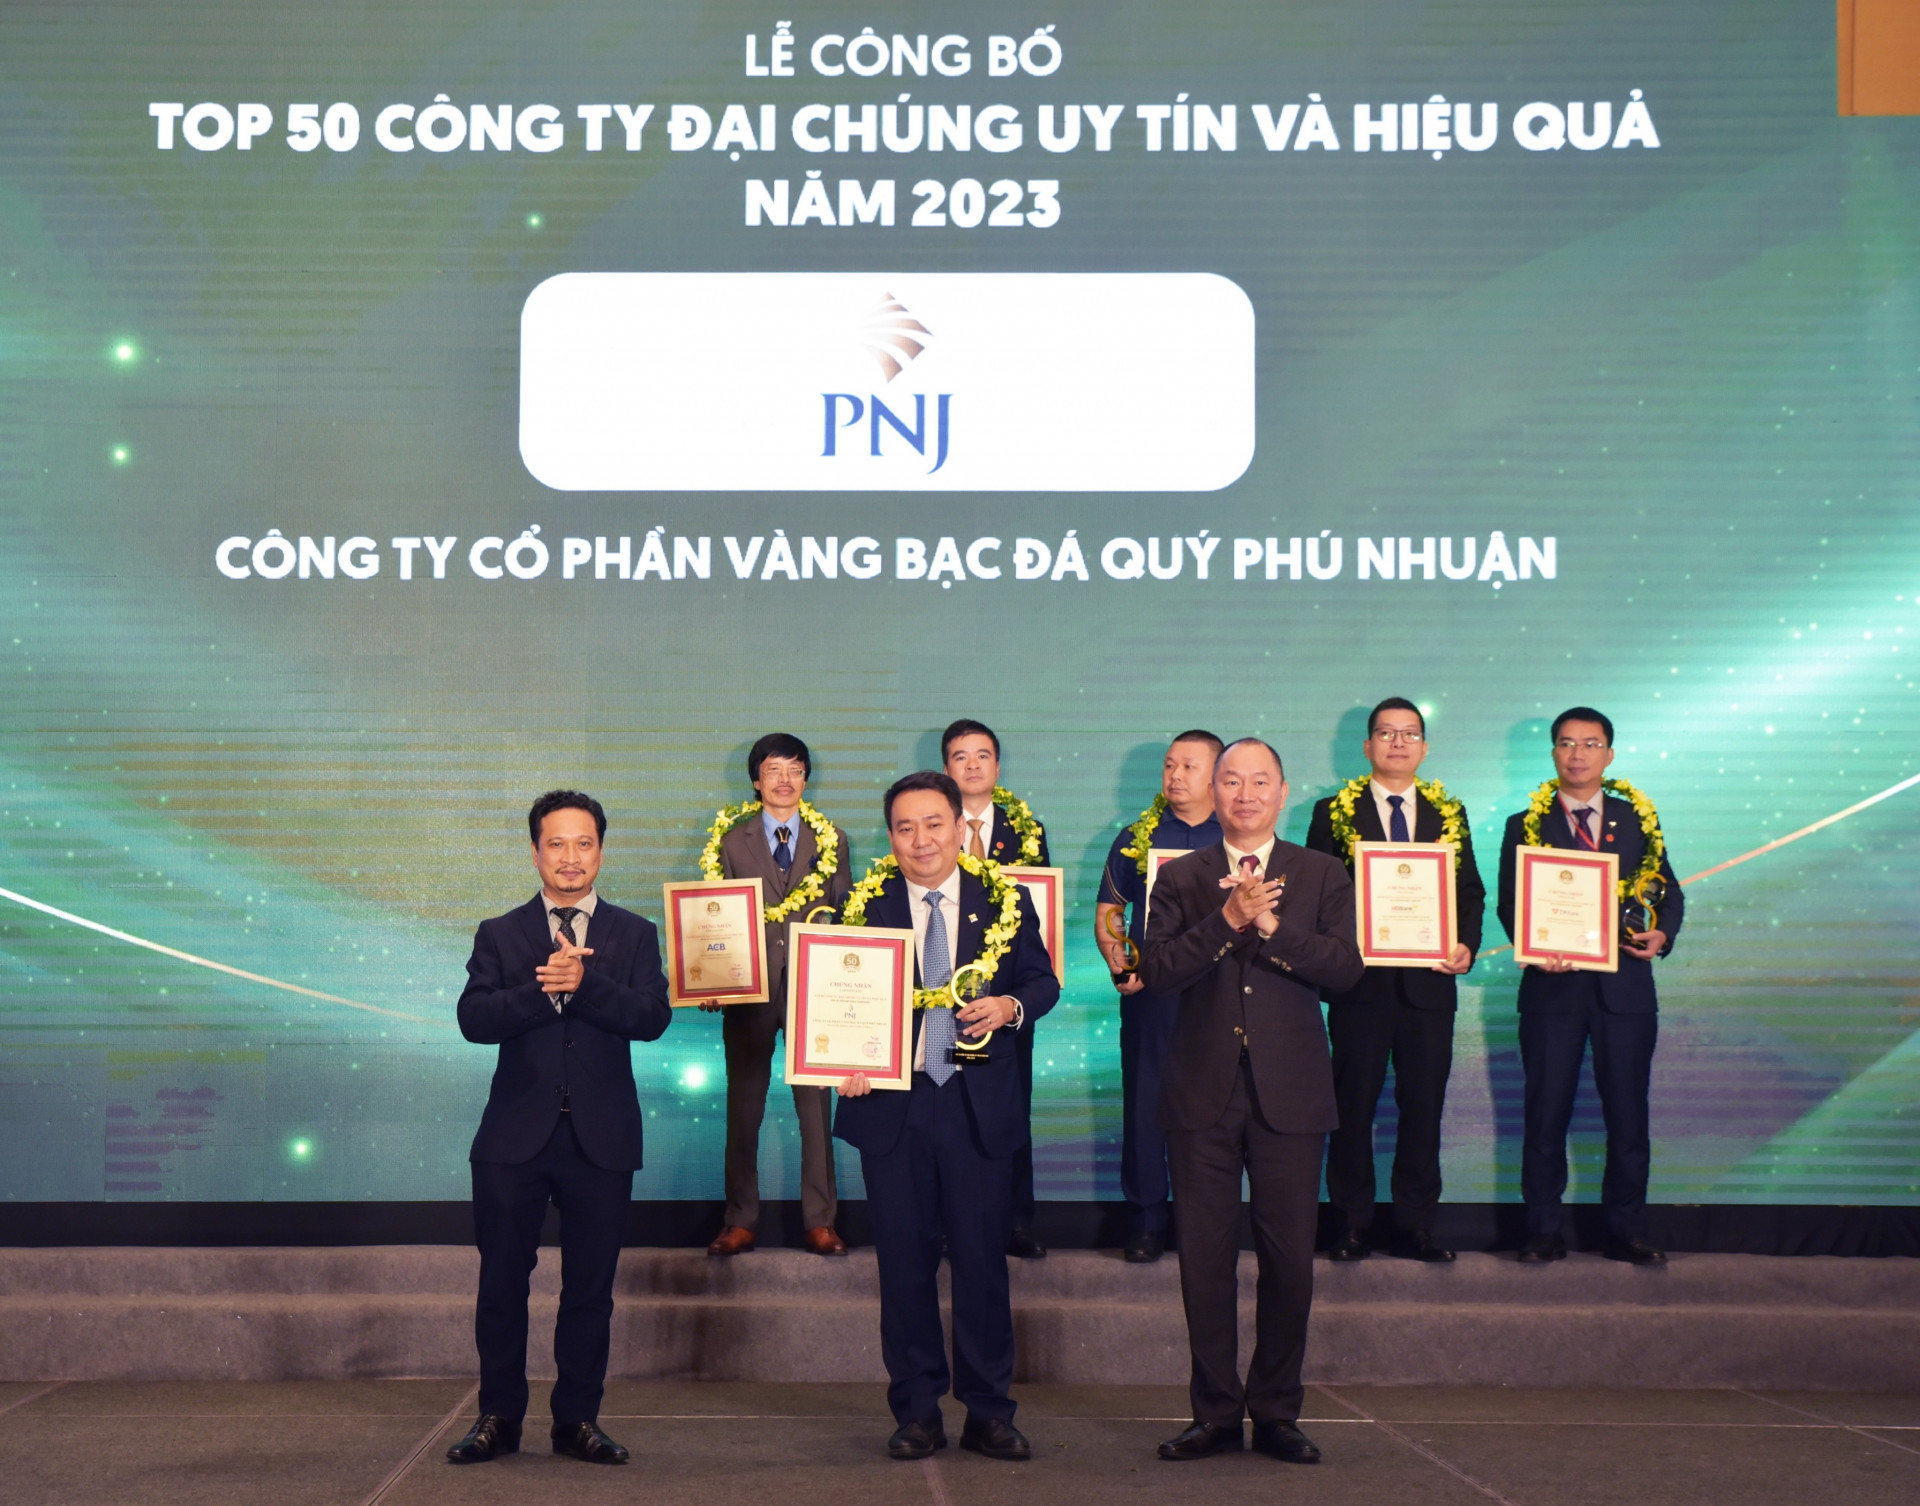 Ông Lê Trí Thông - Phó chủ tịch HĐQT kiêm TGĐ PNJ - đại diện PNJ nhận chứng nhận và kỉ niệm chương Top 50 Công ty Đại chúng uy tín và hiệu quả năm 2023.